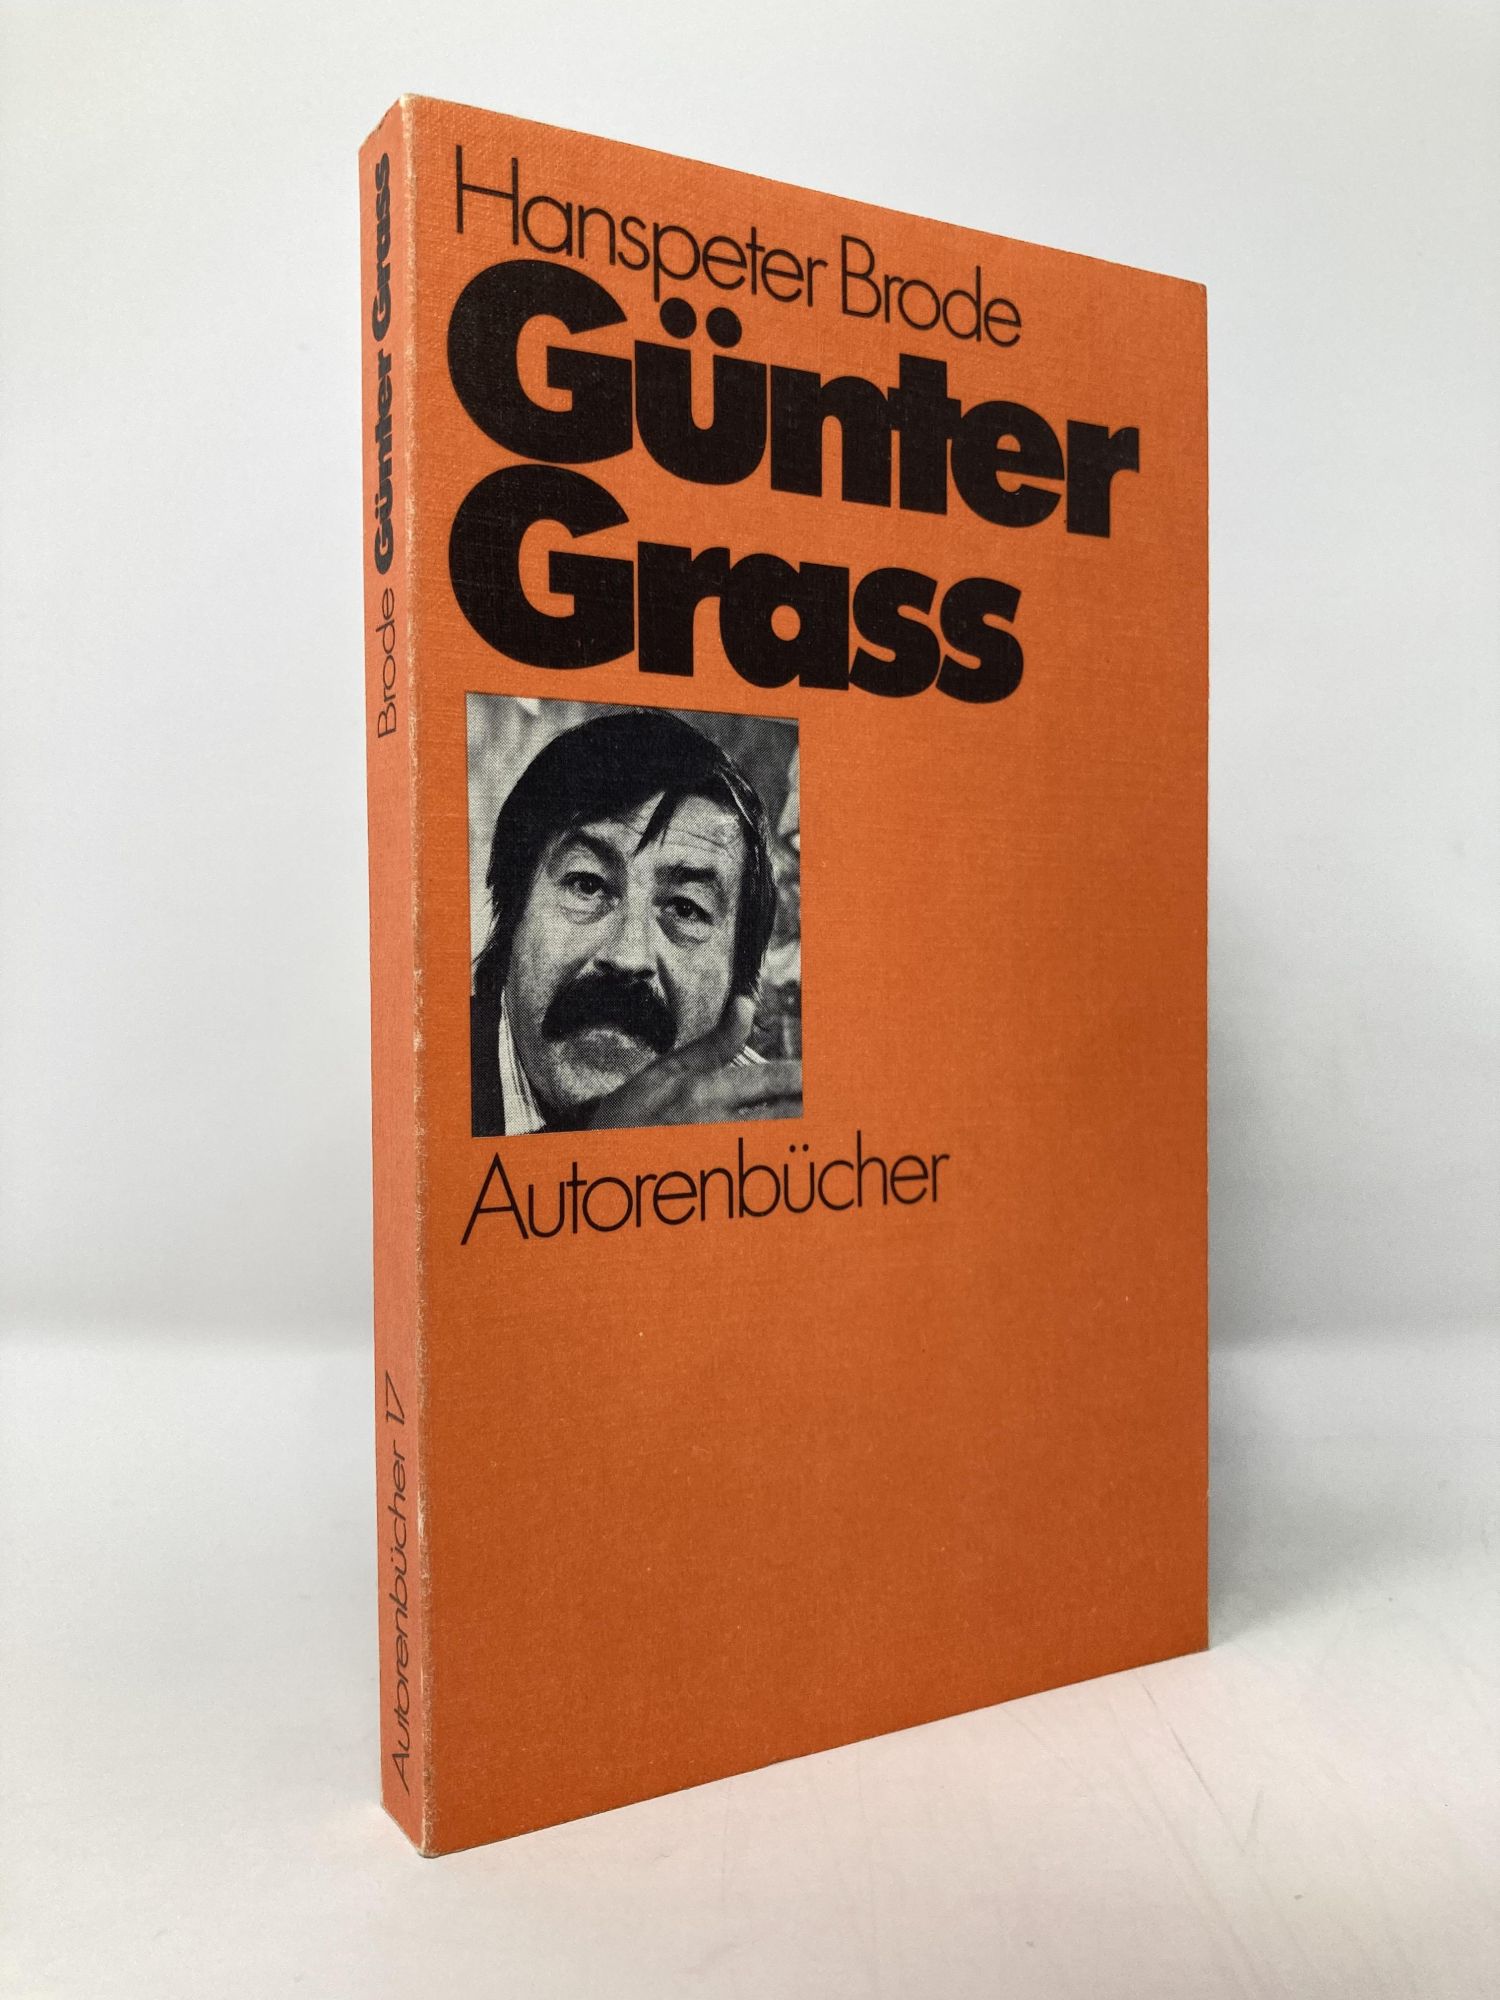 Günter Grass (Autorenbücher ; 17) (German Edition) - Brode, Hanspeter